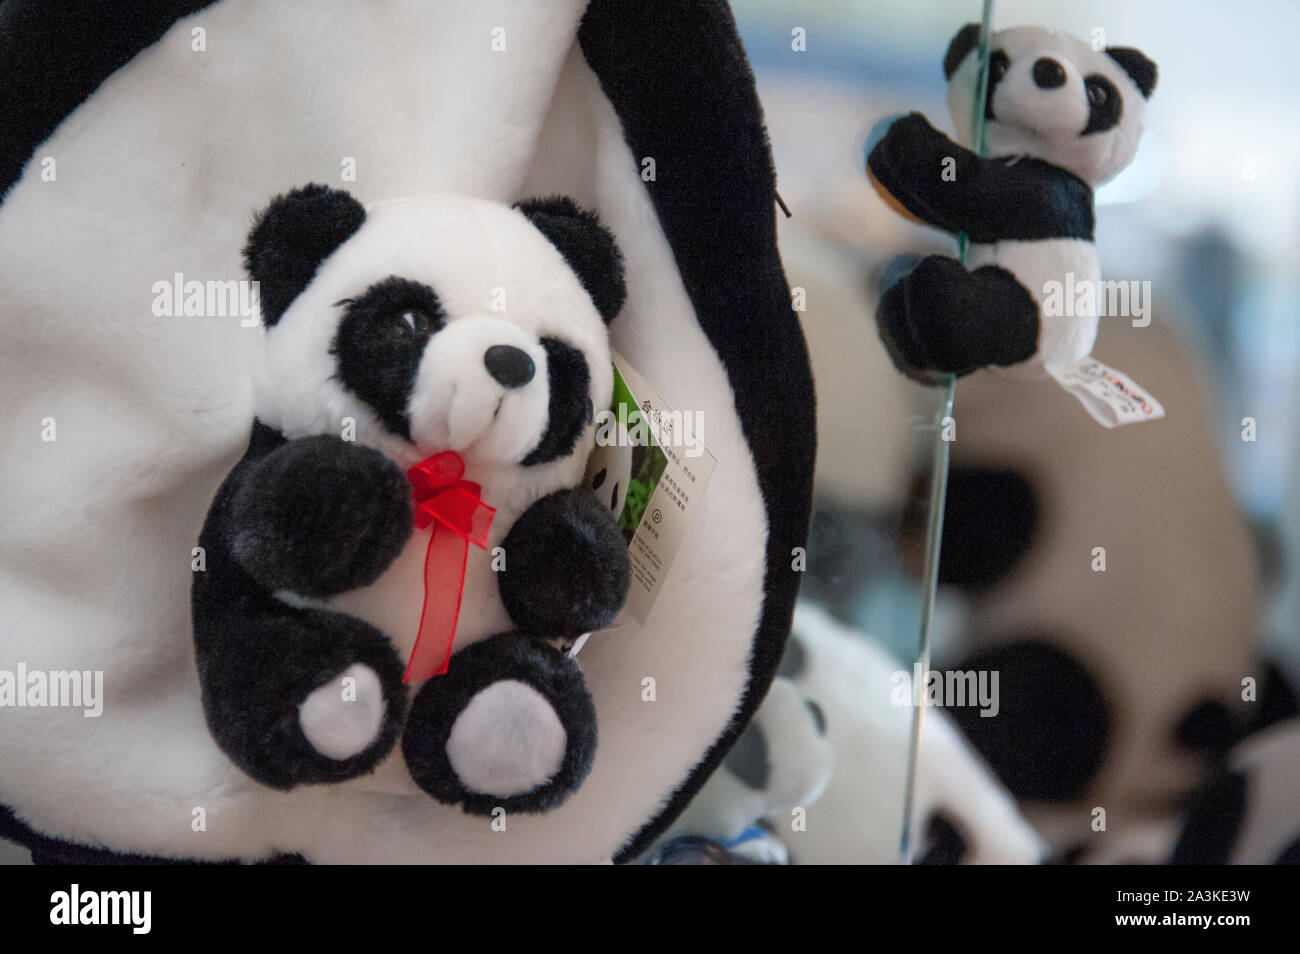 Los productos diseñados por Panda, muñecas, bolsas y souvenirs están expuestos para la venta en el Aeropuerto Internacional de Chengdu, China. Foto de stock